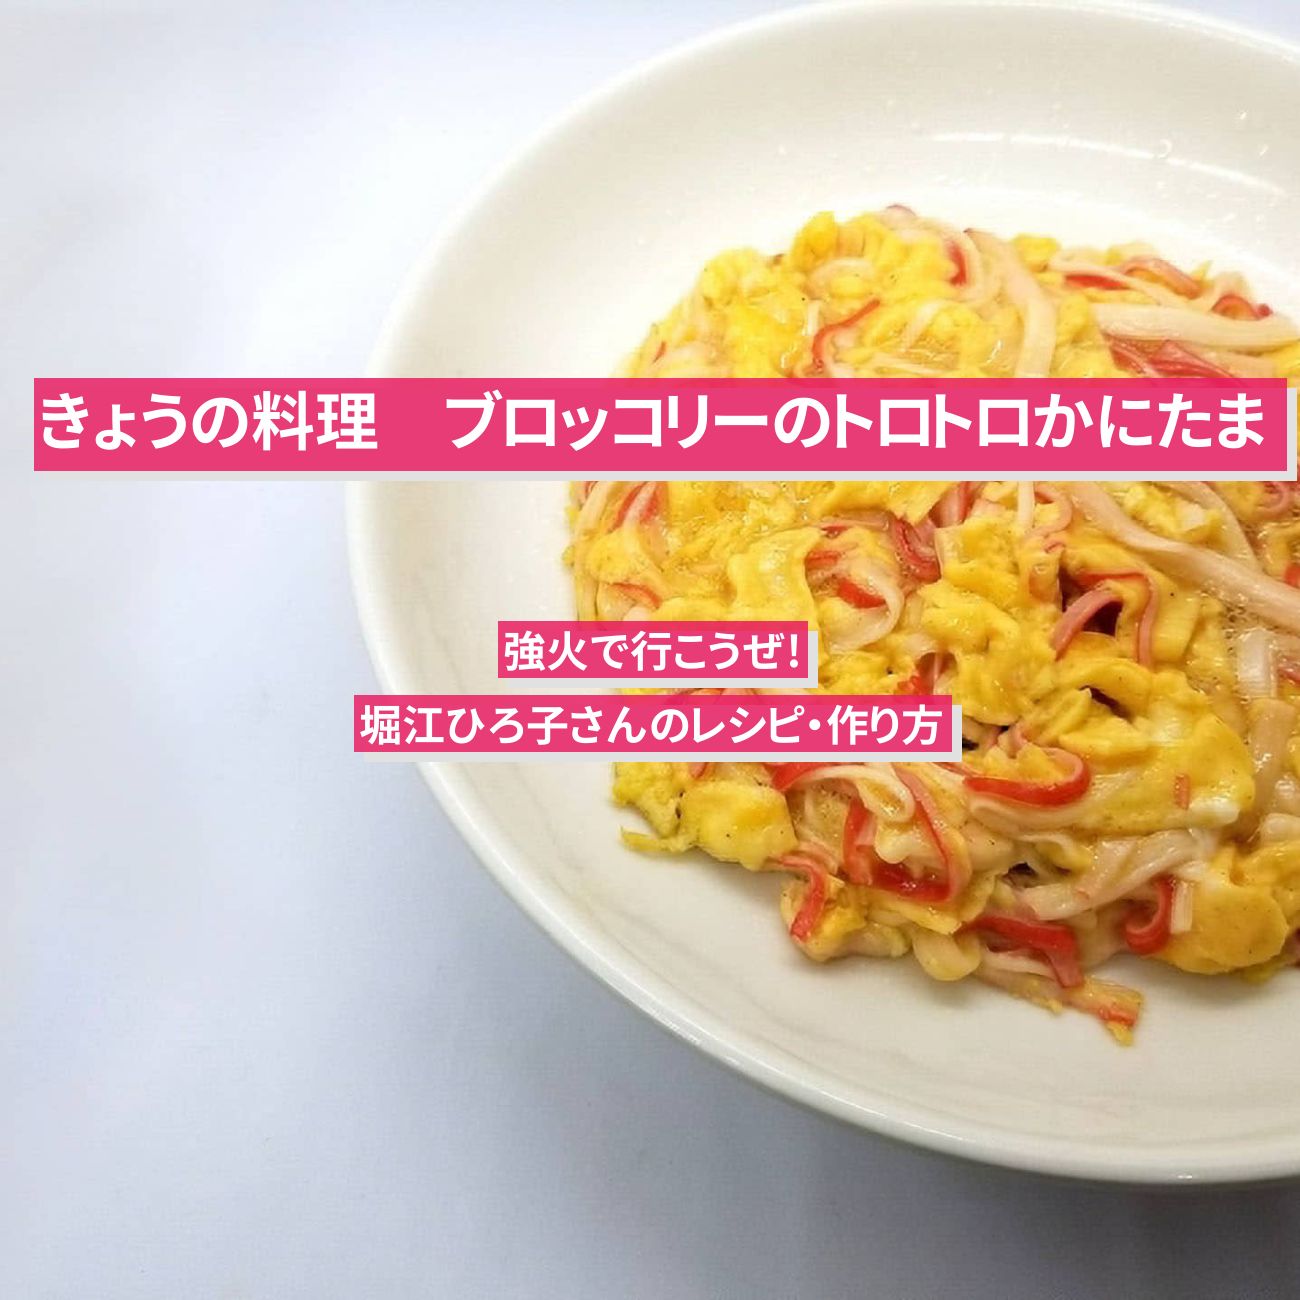 【きょうの料理】『ブロッコリーのトロトロかにたま』堀江ひろ子さんのレシピ・作り方